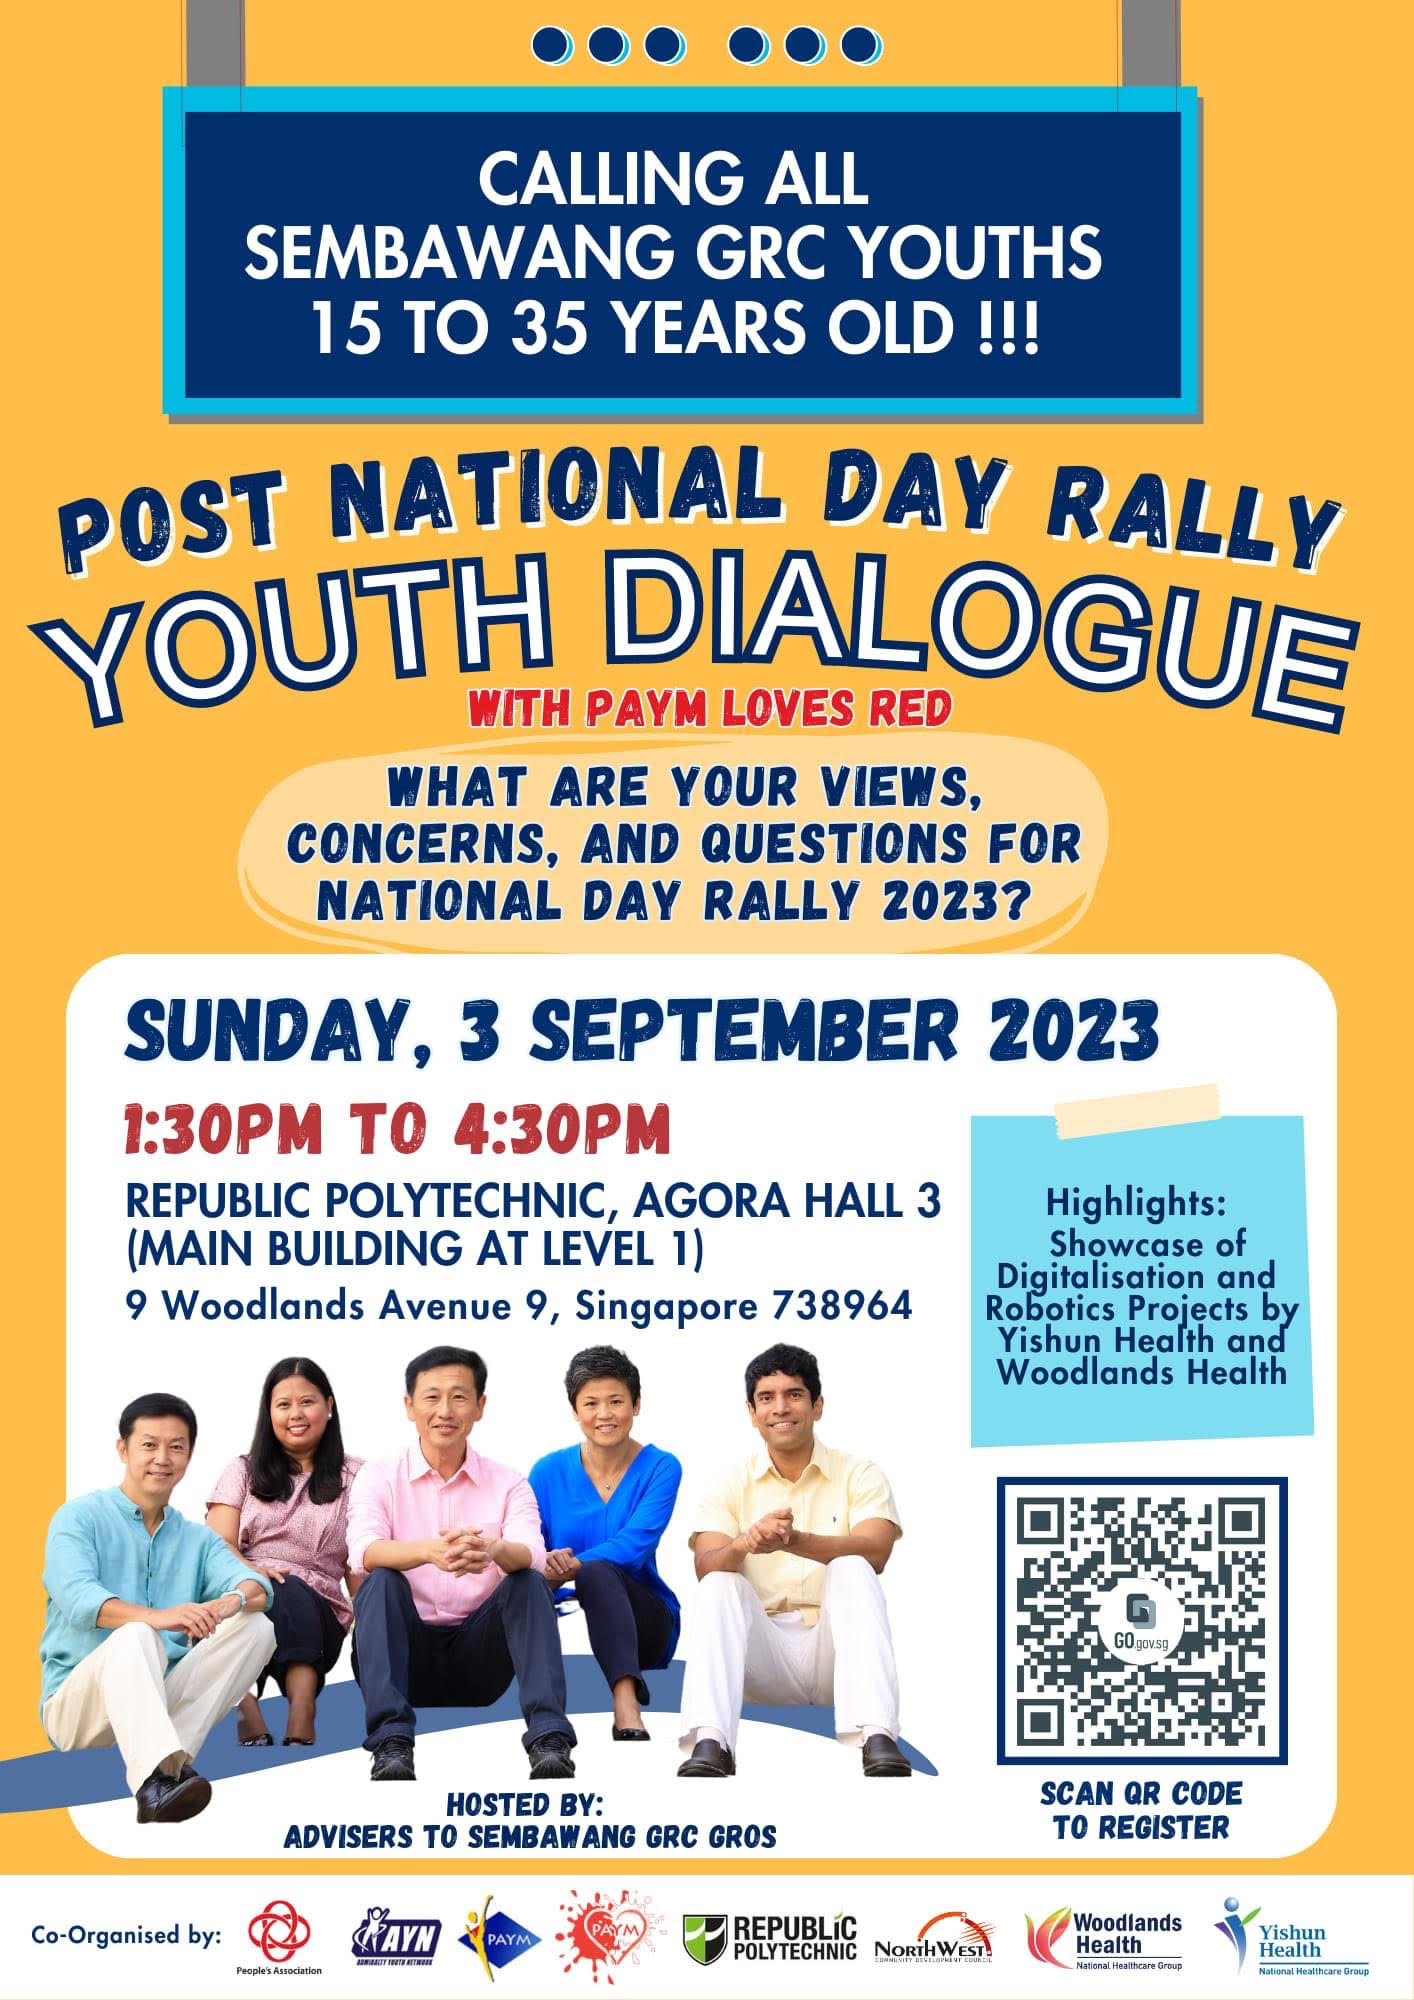 Post NDR Youth Dialogue.jpg